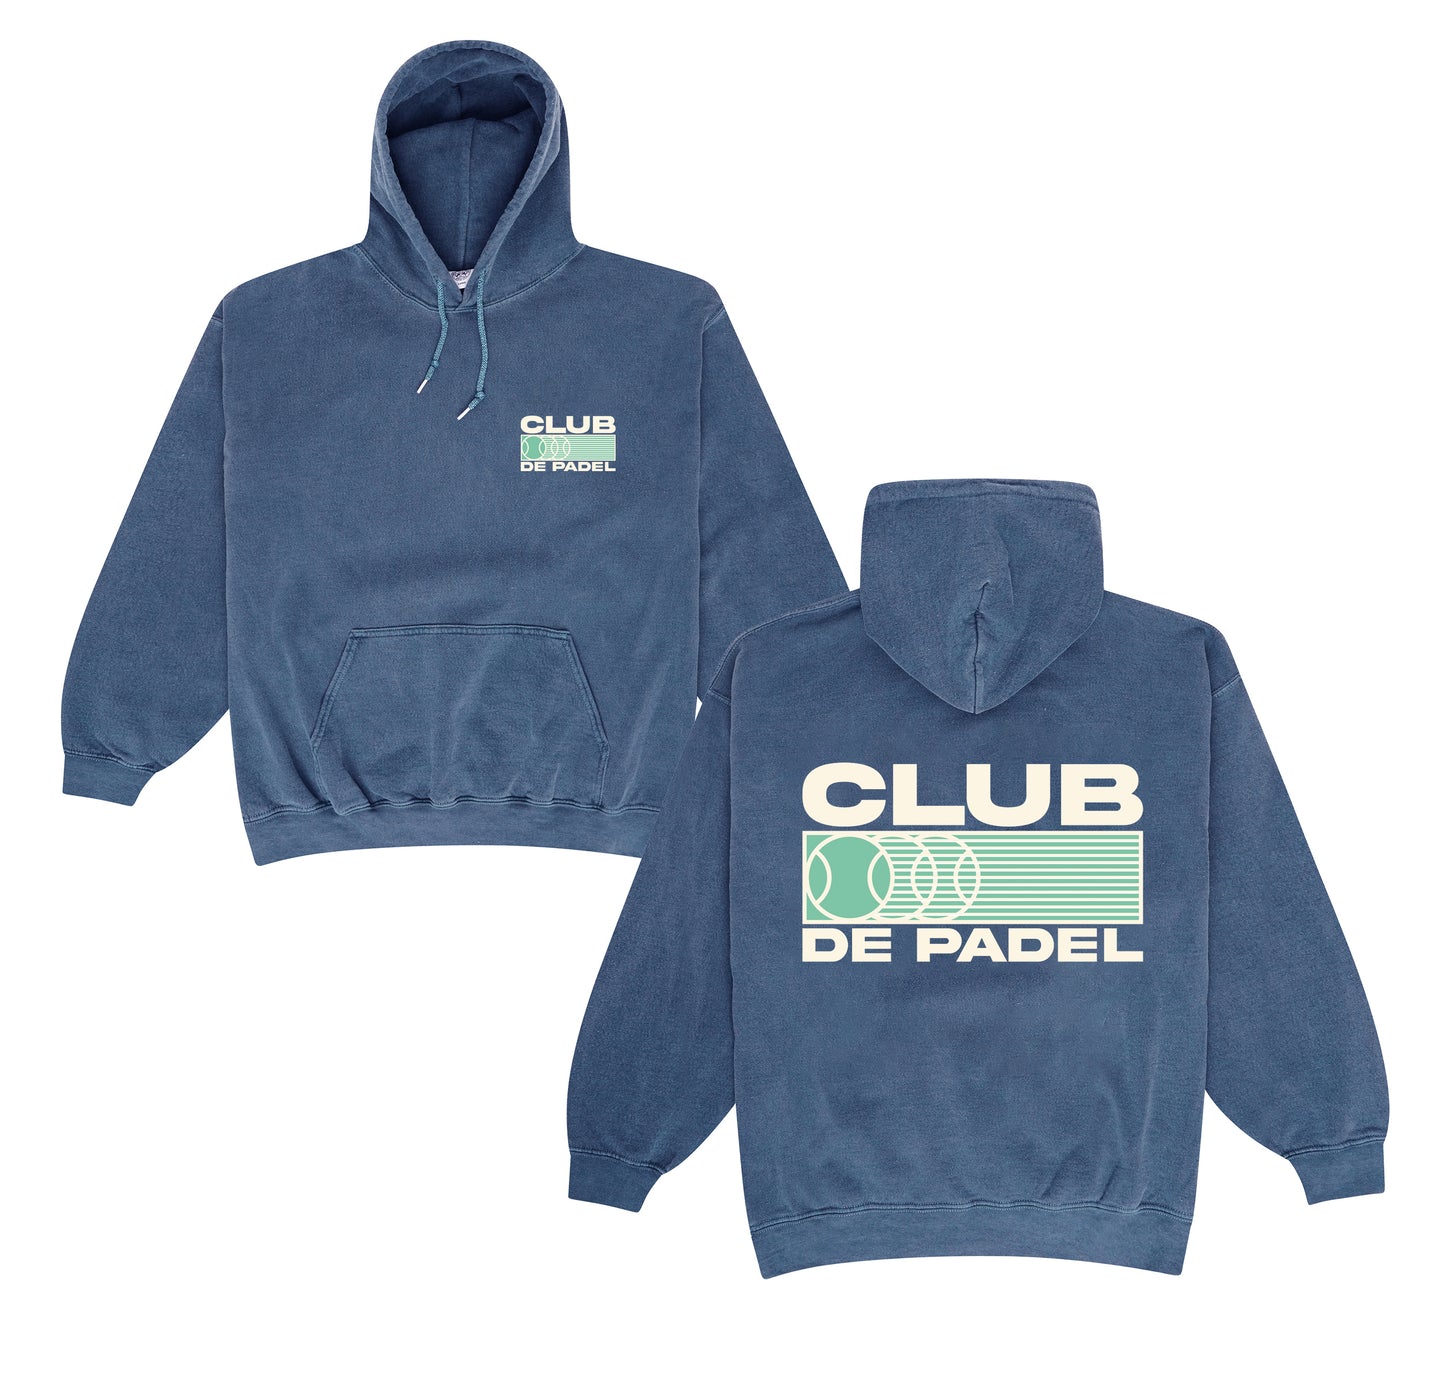 Club de Padel 'Heritage' Vintage Washed Hoodie - Navy – UN:IK Clothing